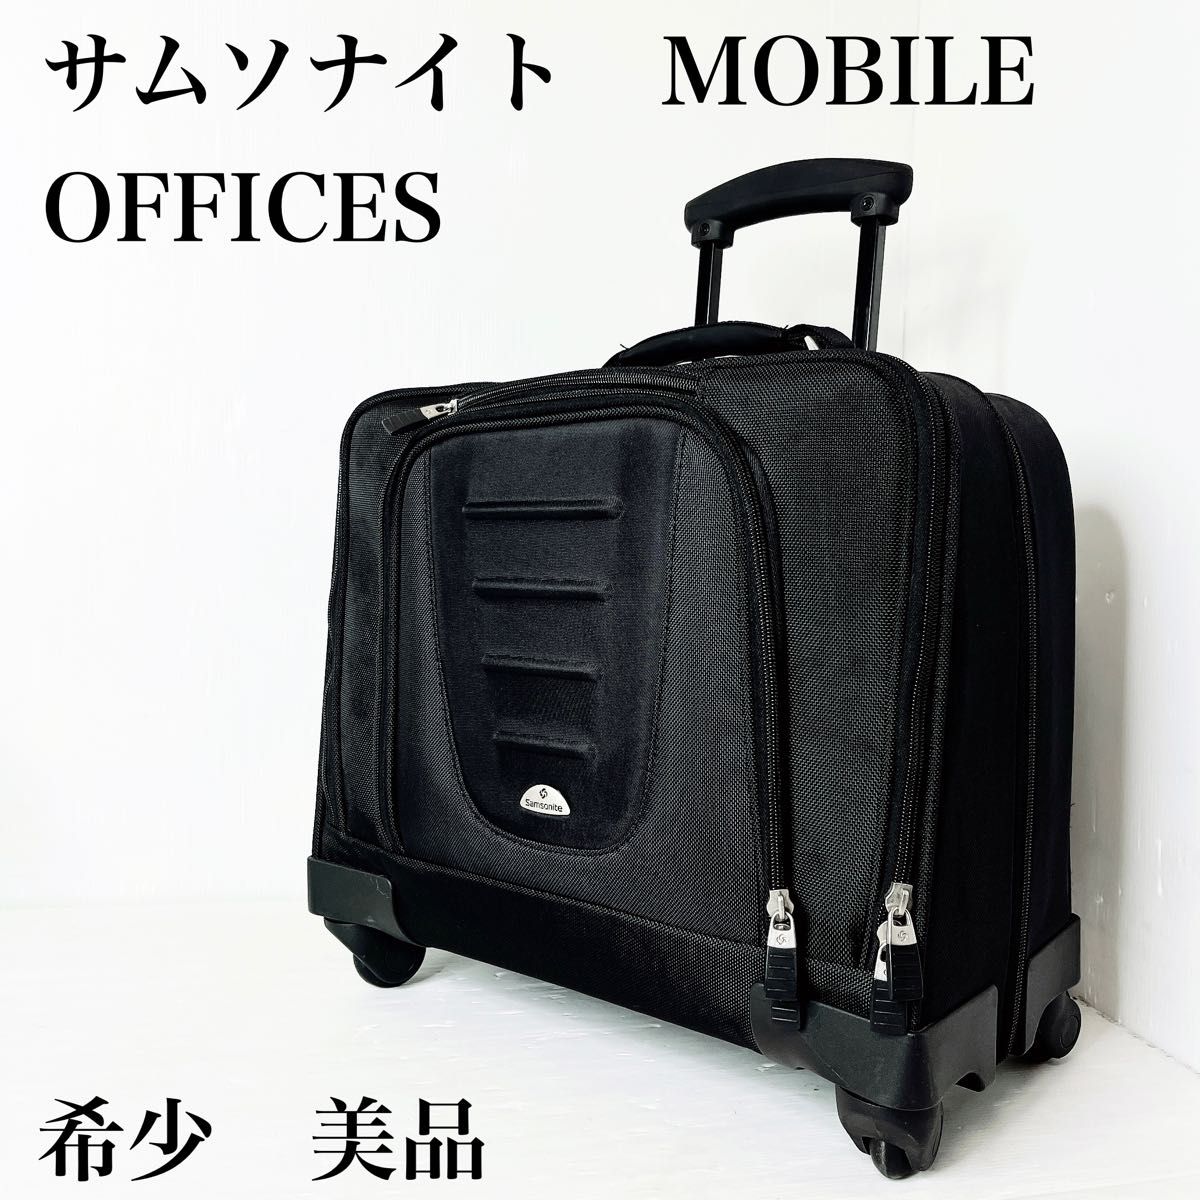 サムソナイト キャリーバッグ MOBILE OFFICES 機内持ち込み 旅行用品